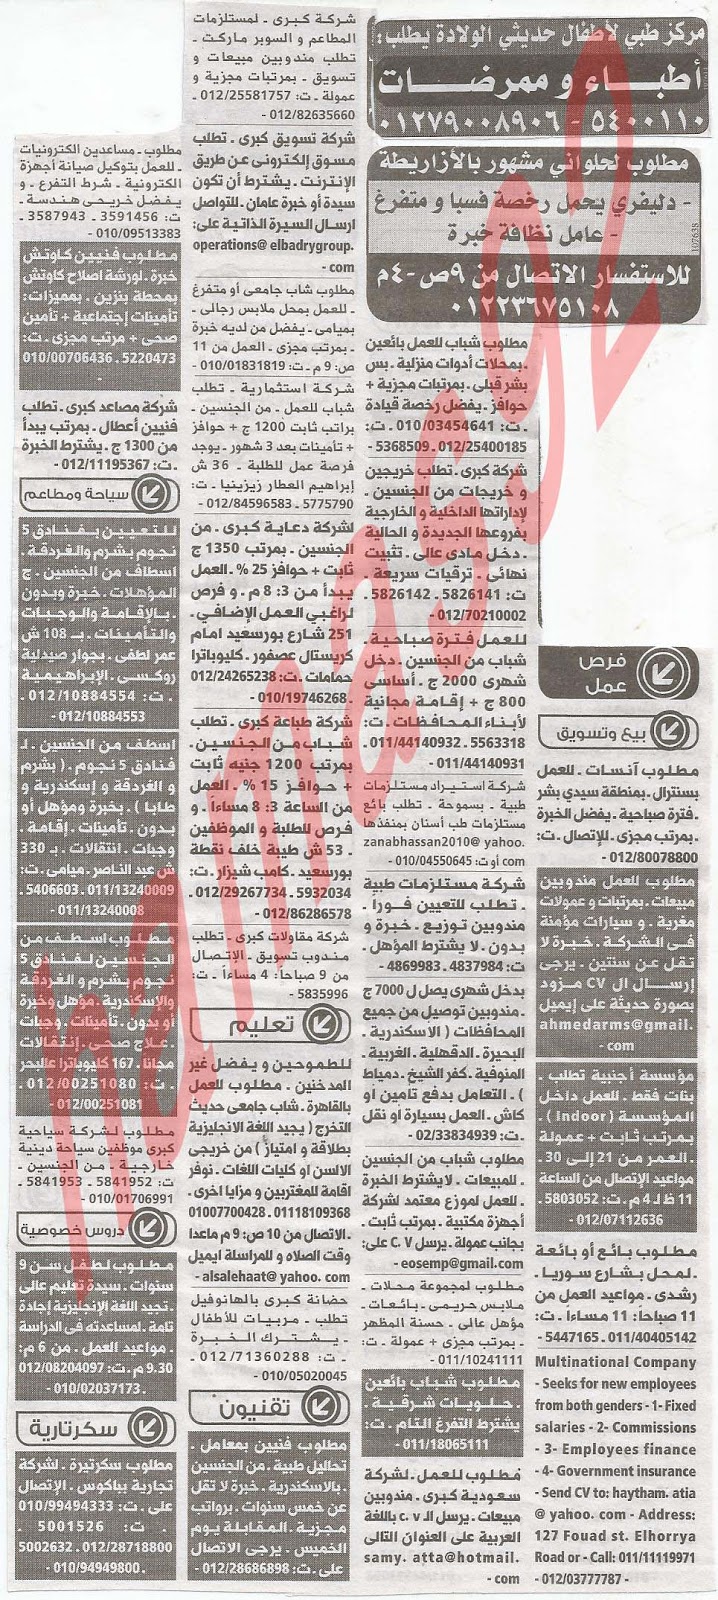 وظائف جريدة الوسيط الاسكندرية الاثنين 11/2/2013 %D9%88+%D8%B3+%D8%B3+2